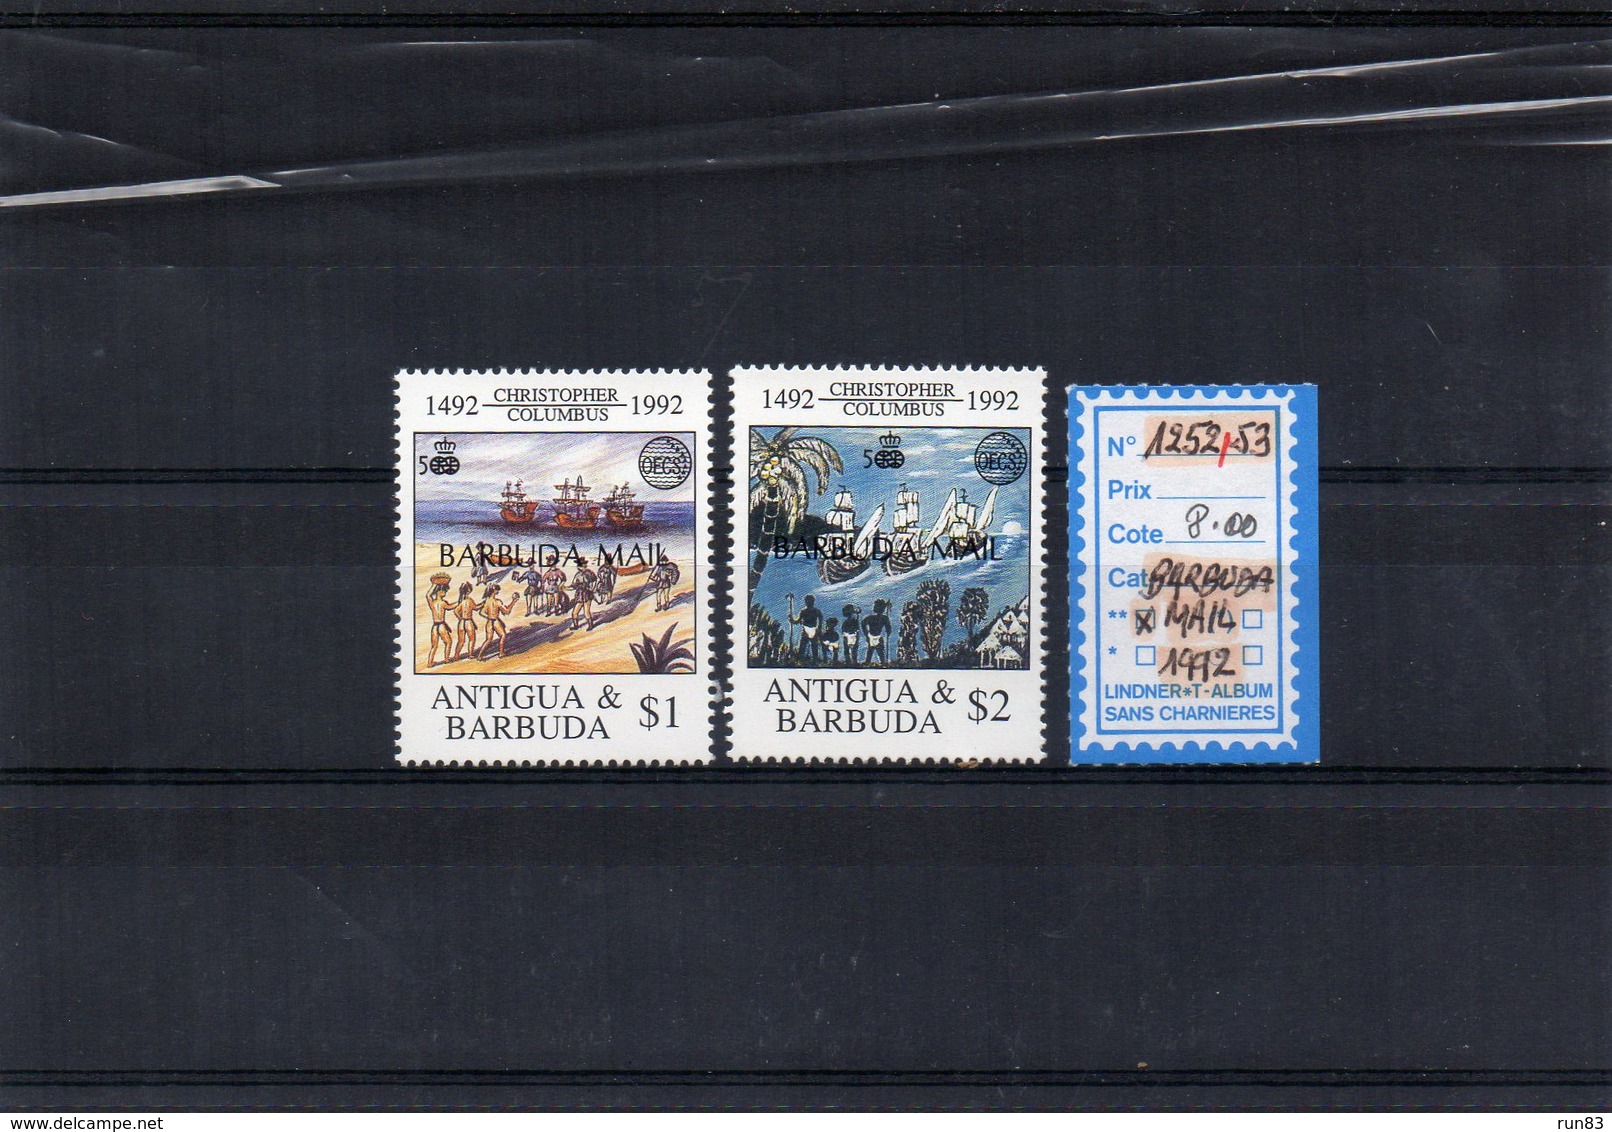 BARBUDA  1992 / Superbe  Séris De 2 Valeur Surchargé Barbuda Mail  N° 1252 / 53  MNH Cote 8.00  Départ Vente 2.00 Euros - Antigua Et Barbuda (1981-...)